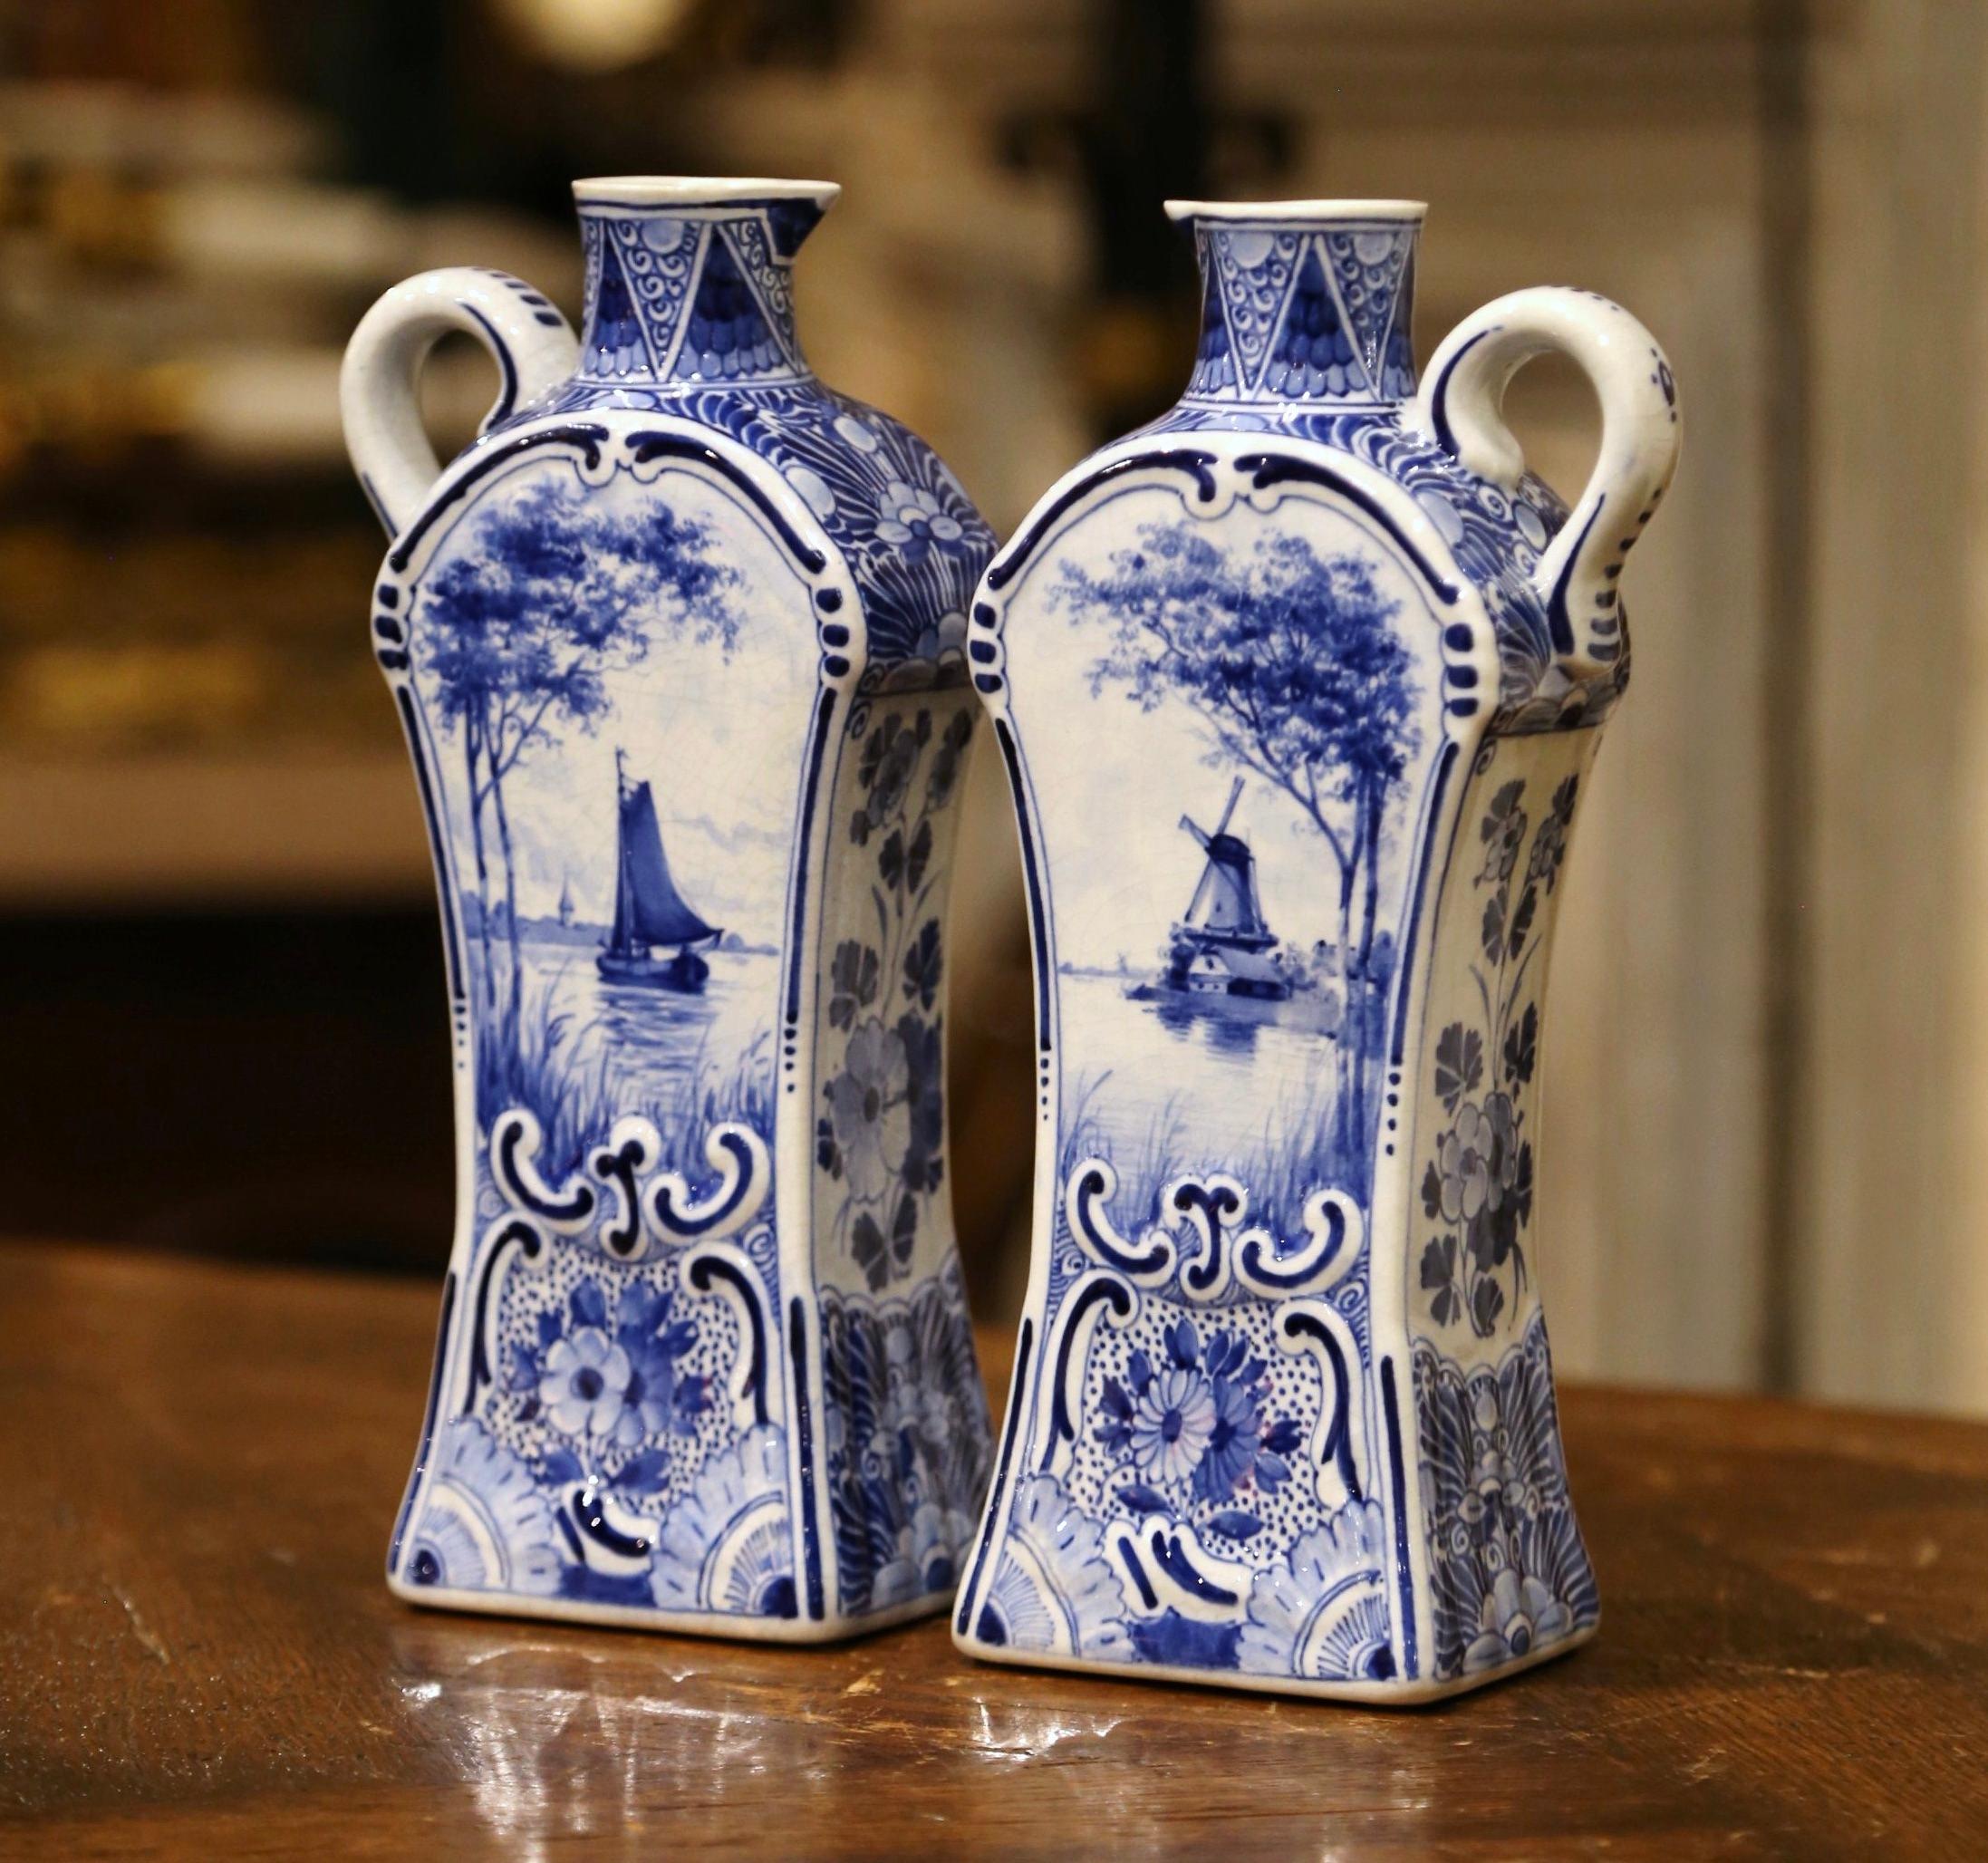 Decora una mensola o il bancone della cucina con questa elegante coppia di antichi contenitori Delft per olio d'oliva o aceto. Realizzati in Olanda intorno al 1920, entrambi i vasi alti hanno una forma complessa e sono dotati di una maniglia